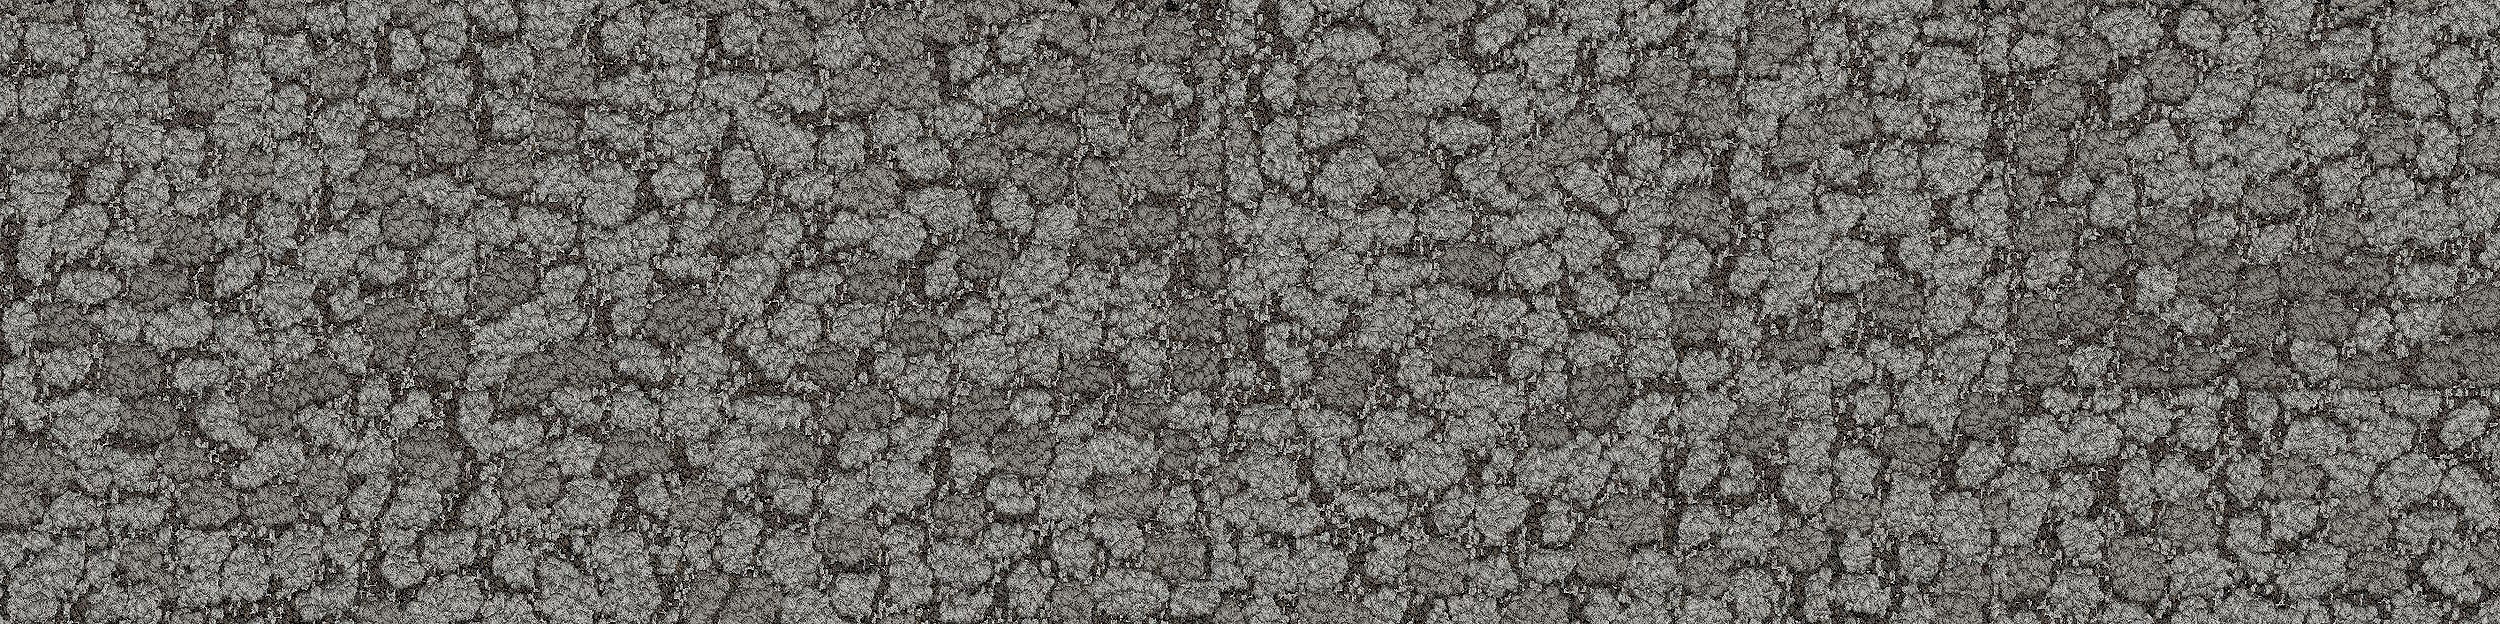 HN840 Carpet Tile In Nickel numéro d’image 13